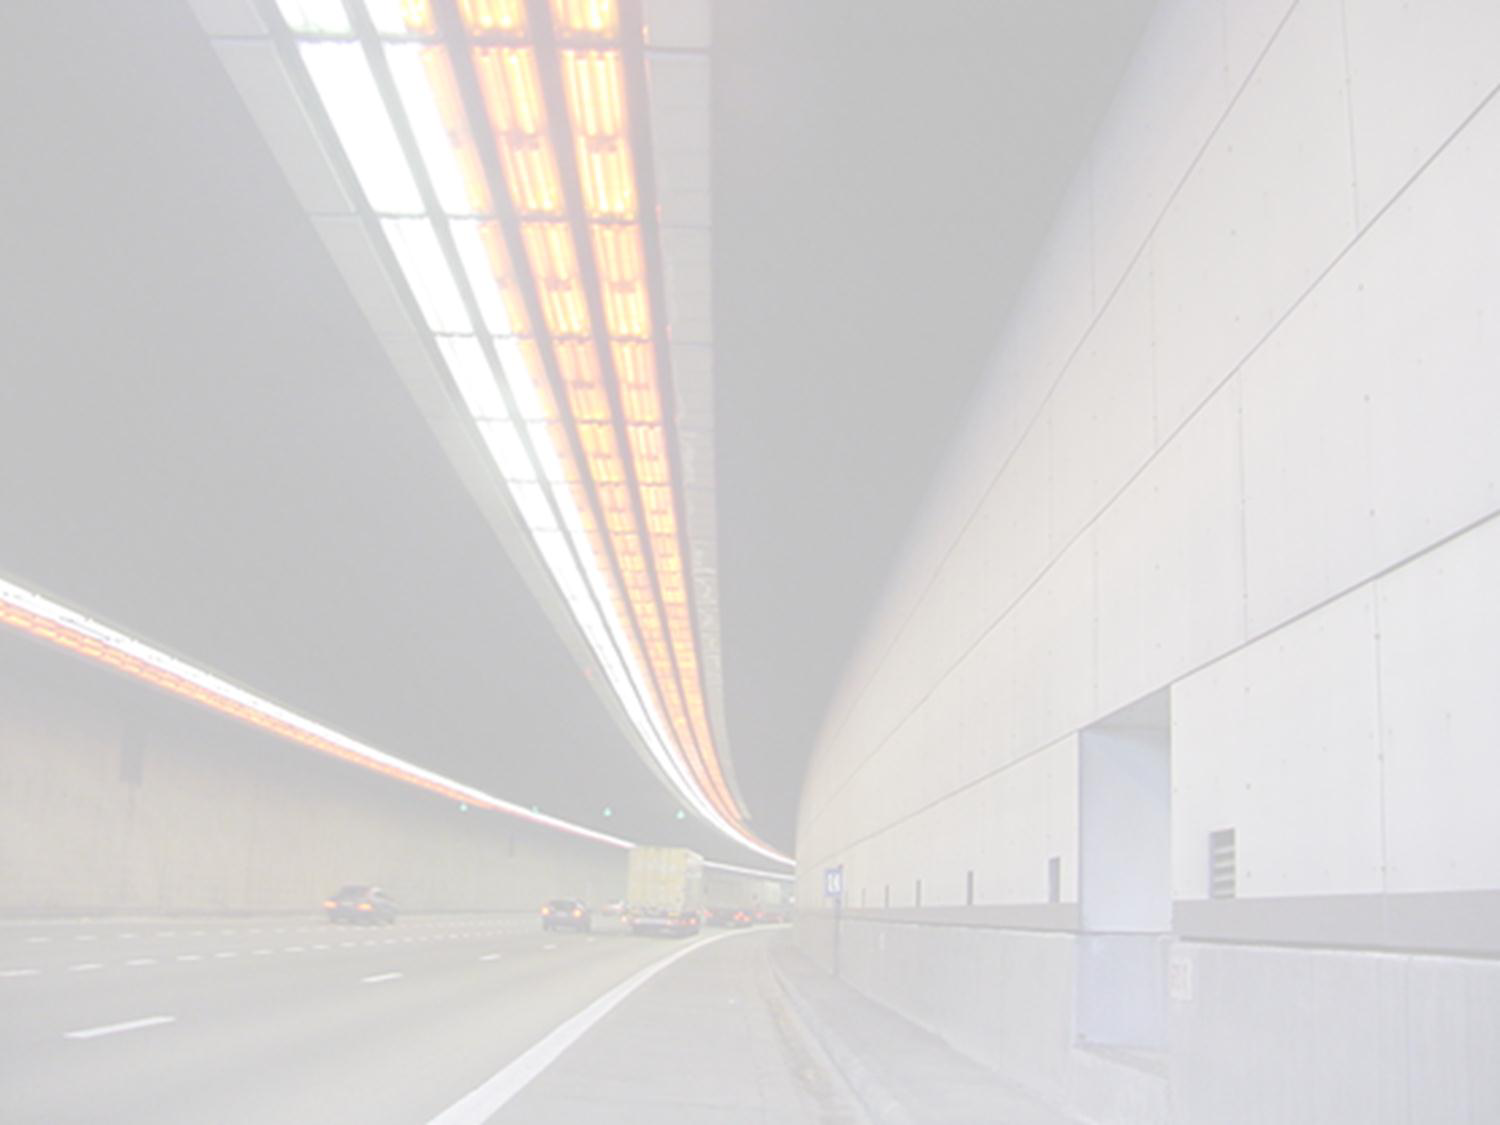 Verhogen tunnelveiligheid (2) Vernieuwen tunnelverlichting: Vierarmentunnel Leonardtunnel Vernieuwen van